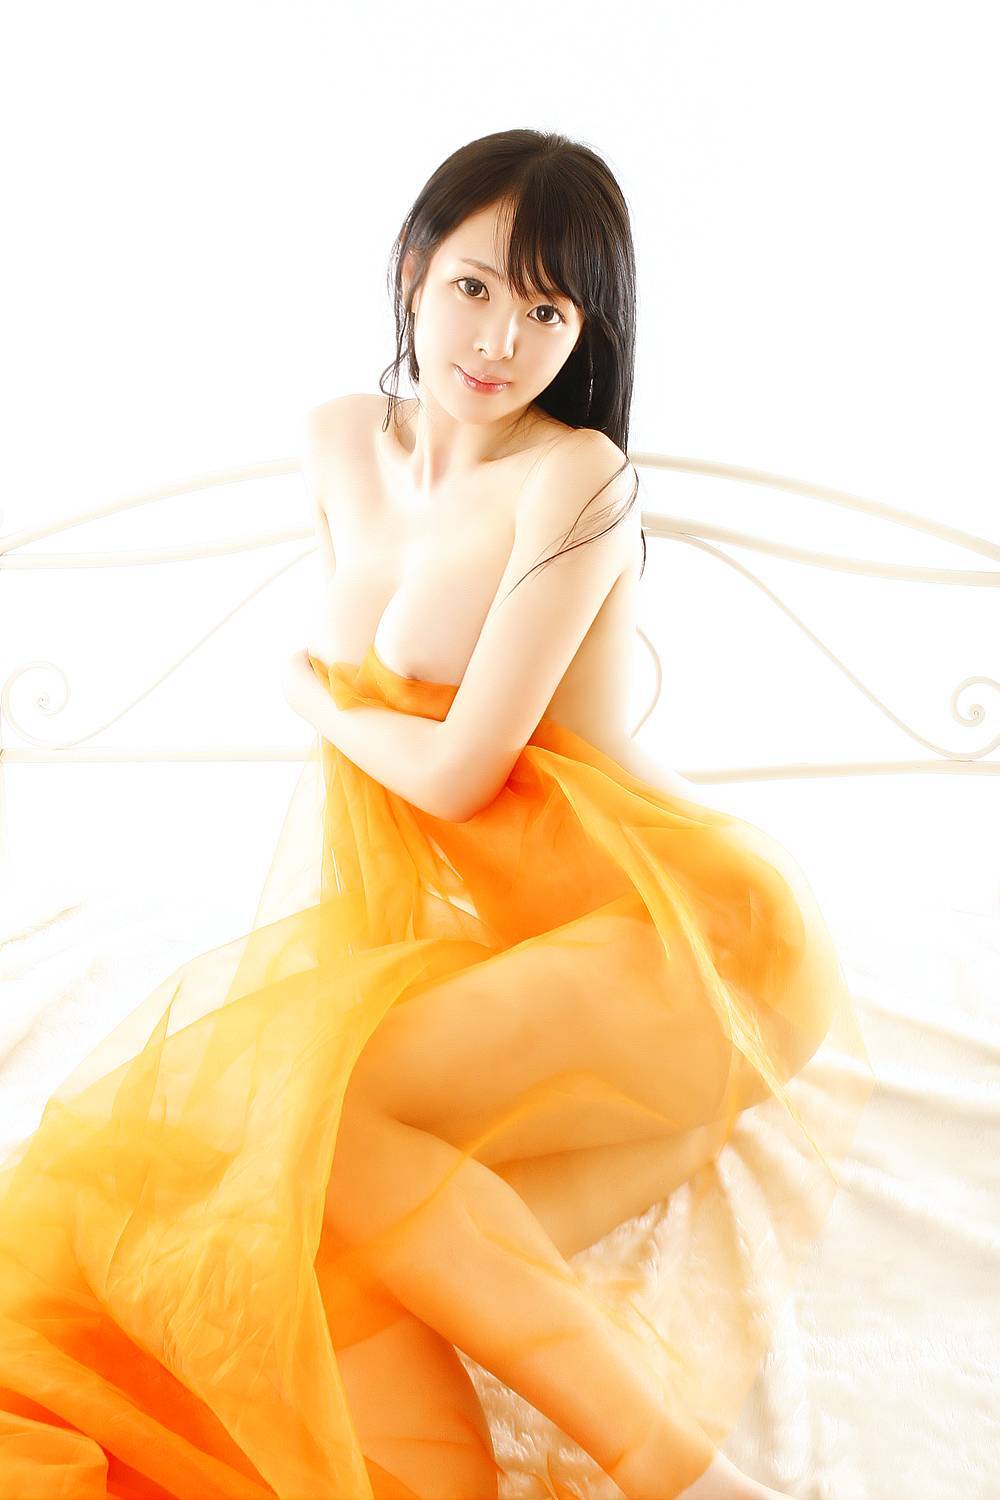 风俗娘最新套图 (4) 韩国媚娘系列最新套图飞速打包下载 可在线浏览